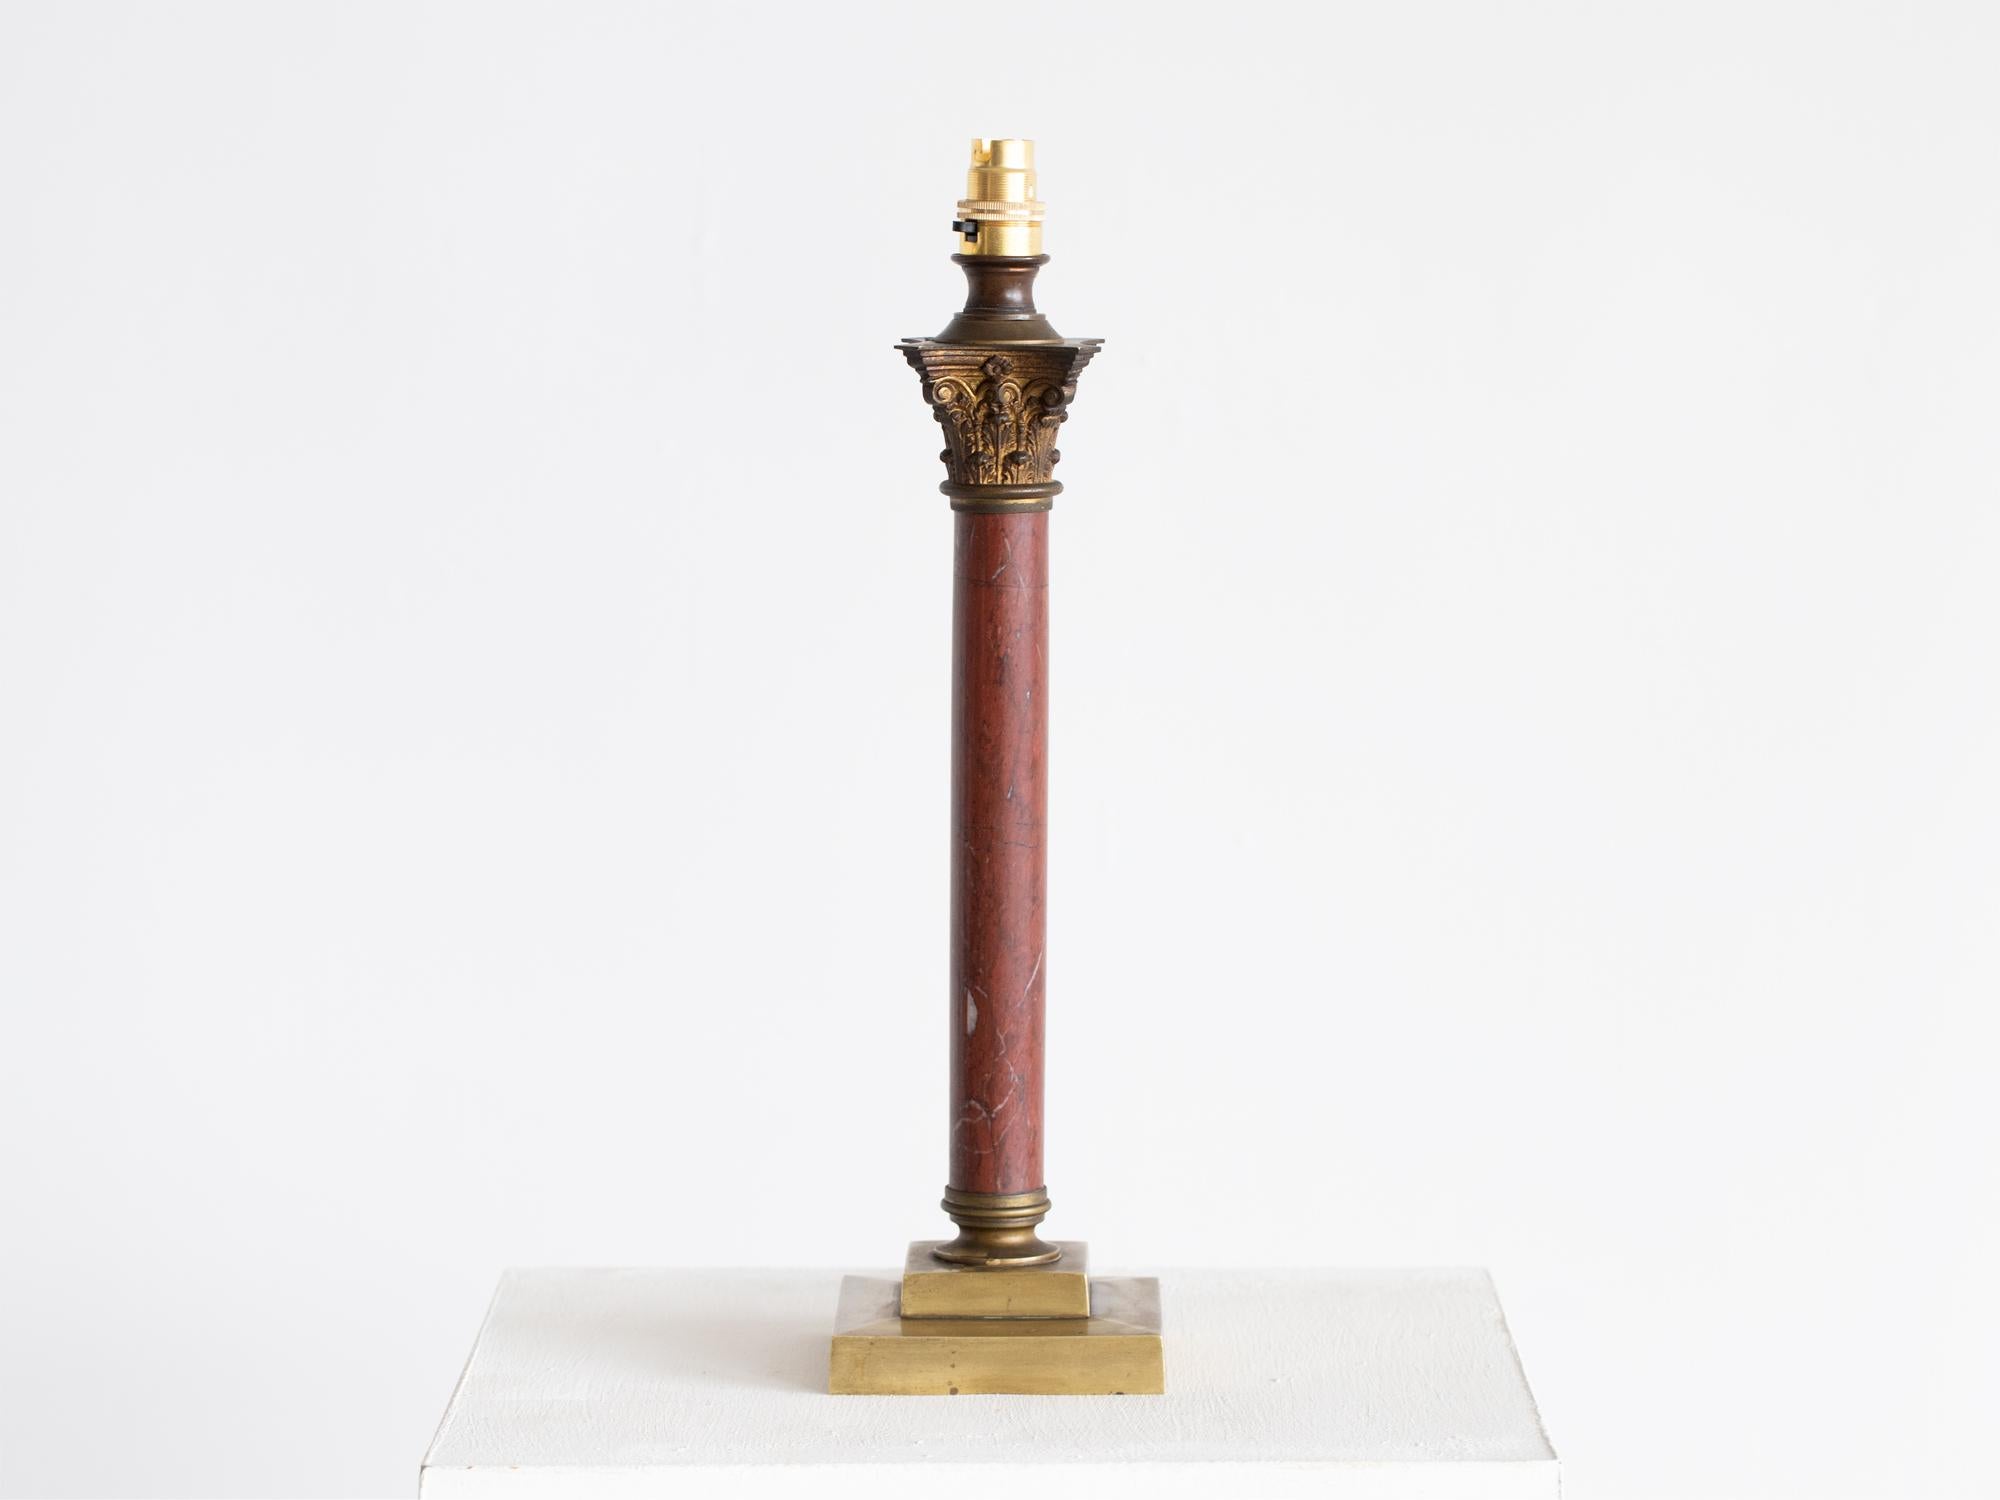 Lampe de table à colonne en marbre rouge avec chapiteau corinthien en métal doré sur une base en laiton à gradins. Français, début du 20e siècle.

Hauteur avec abat-jour : 65 cm (25.6 